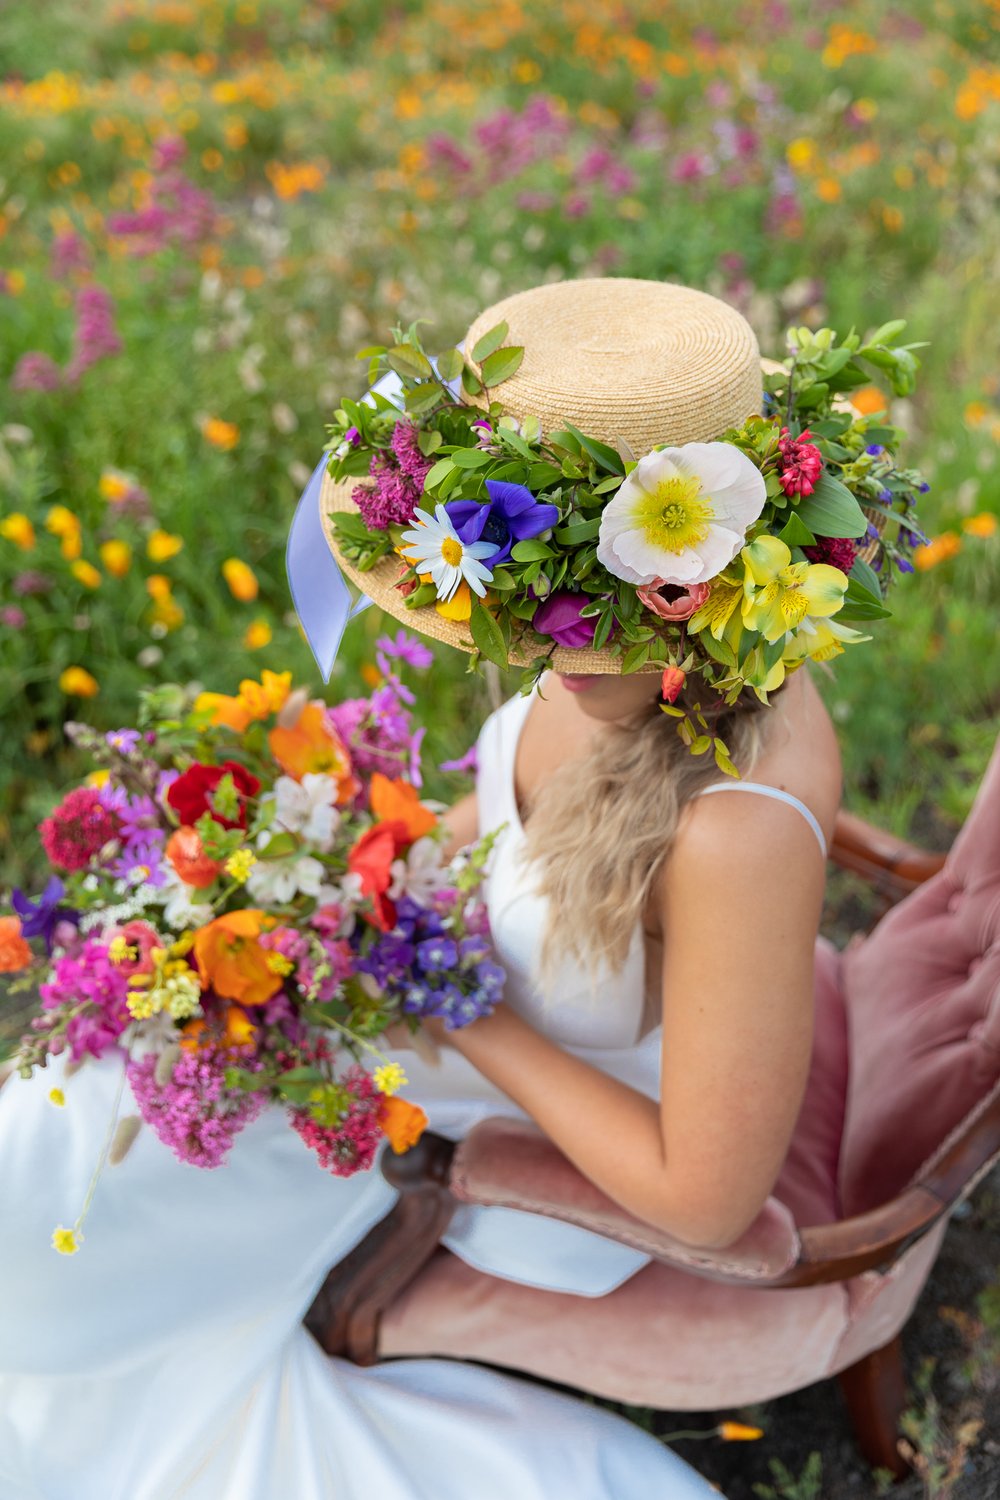 bloom-boquets-hawkes-bay-wedding-florists-eva